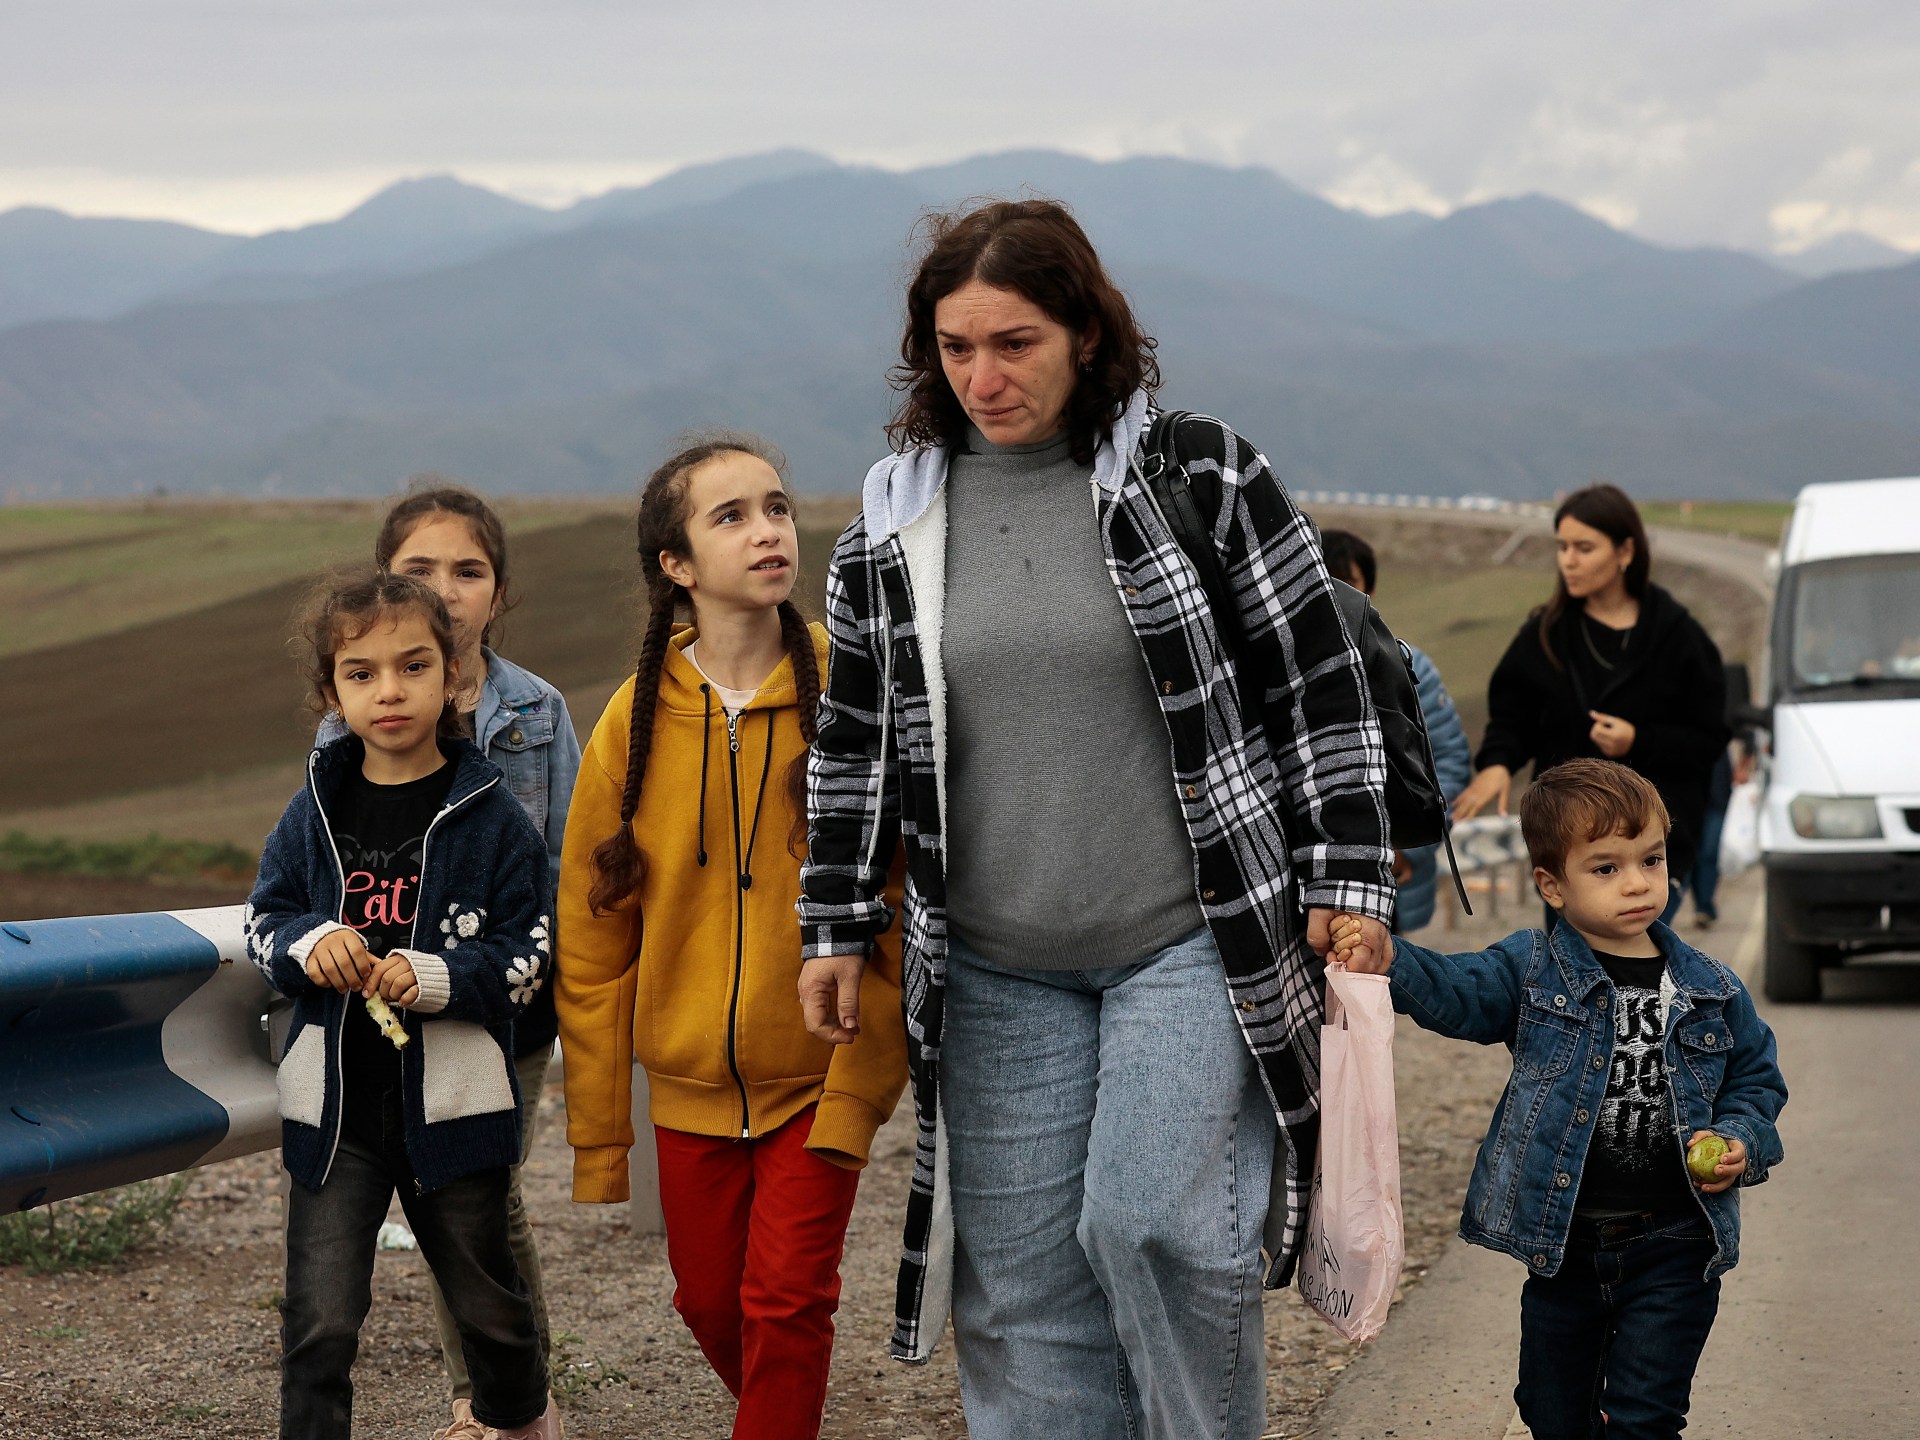 Foto: Migliaia di armeni fuggono dal Nagorno-Karabakh |  Notizie sull’immigrazione